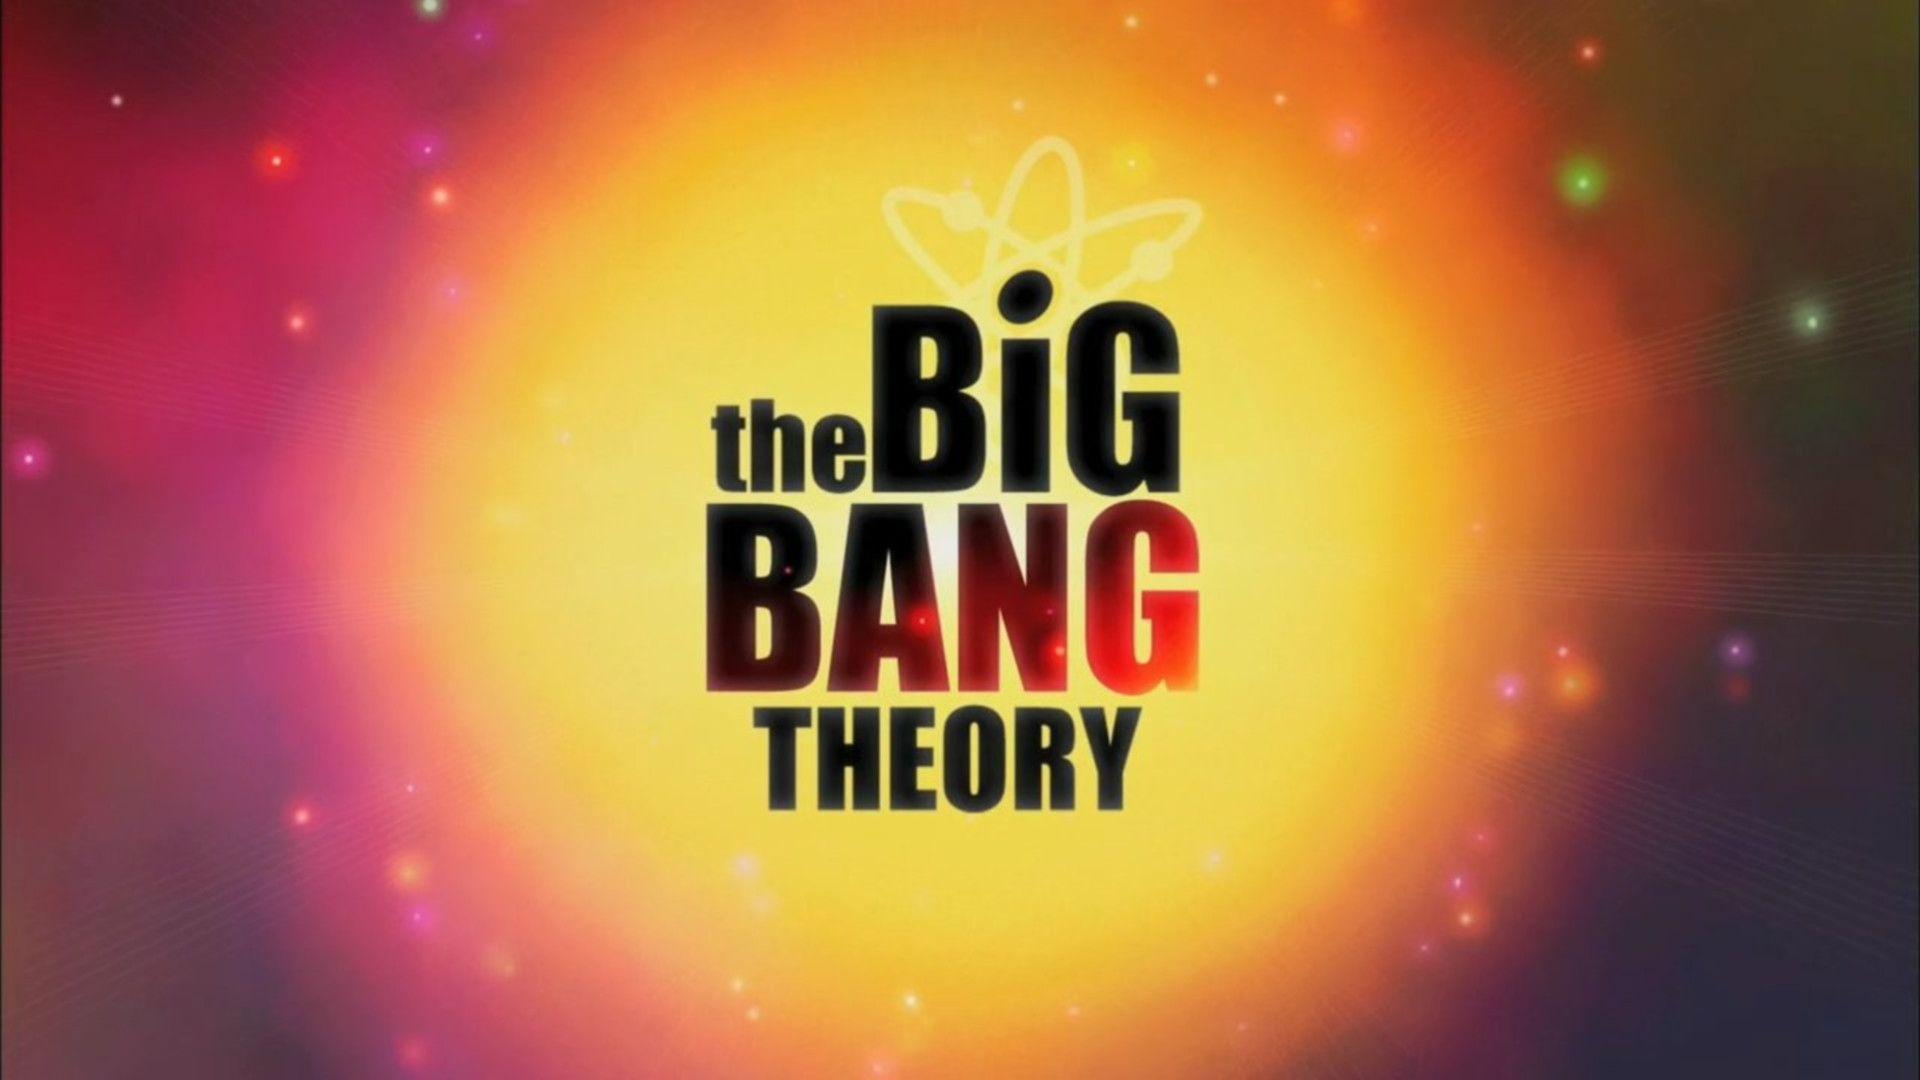 Big Bang Theory Wallpapers Top Free Big Bang Theory